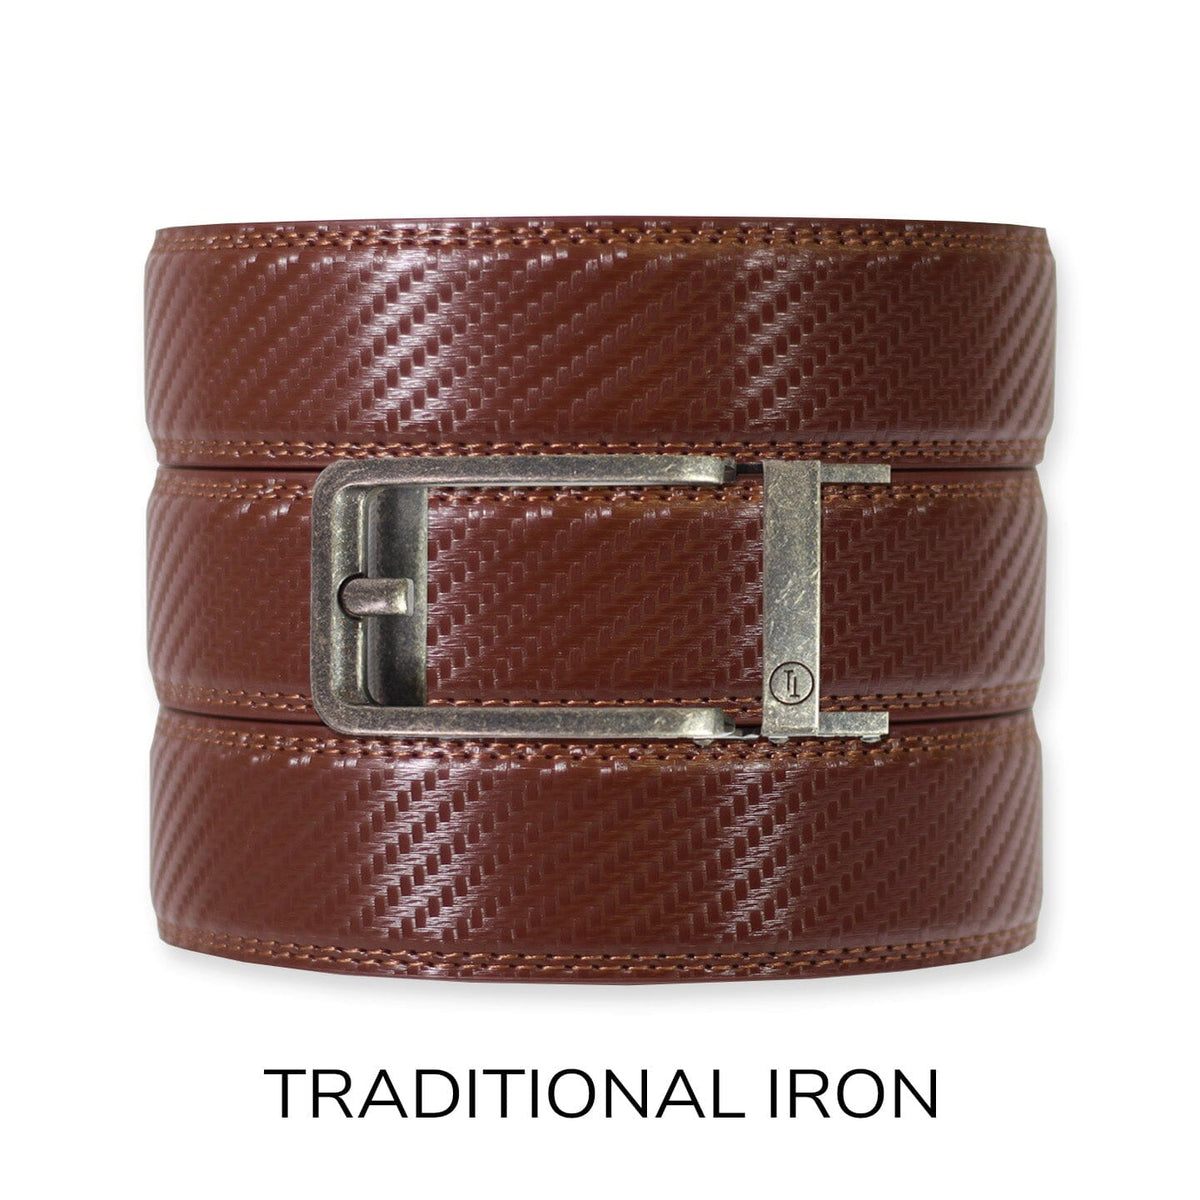 Ratchet Belt for Men Dress Adjustable 1 3/8 Genuine Leather Designer Belt,  Size Length Can be Cut, with Gift Box 